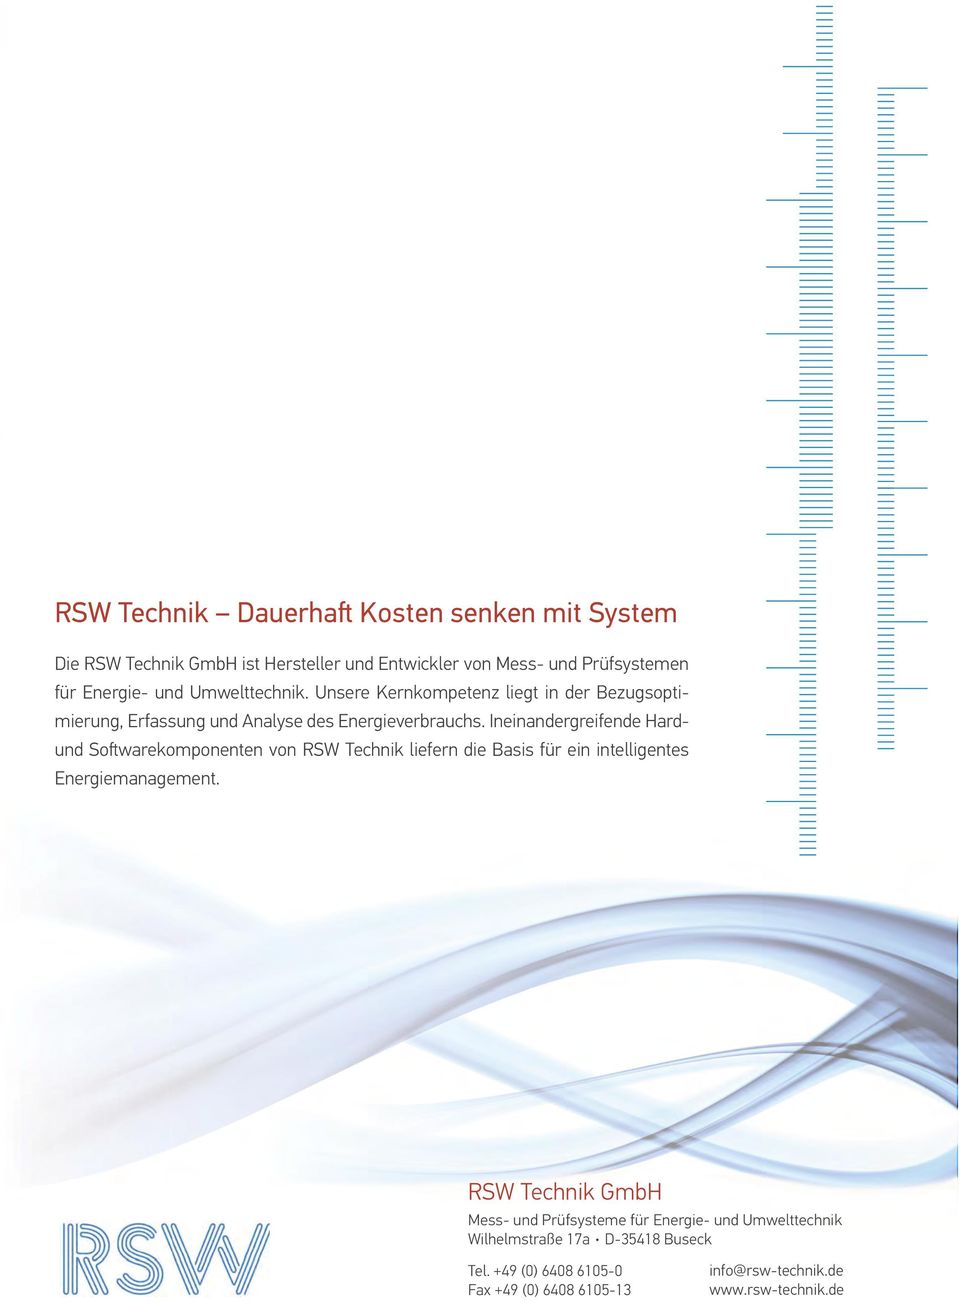 Ineinandergreifende Hardund Softwarekomponenten von RSW Technik liefern die Basis für ein intelligentes Energiemanagement.